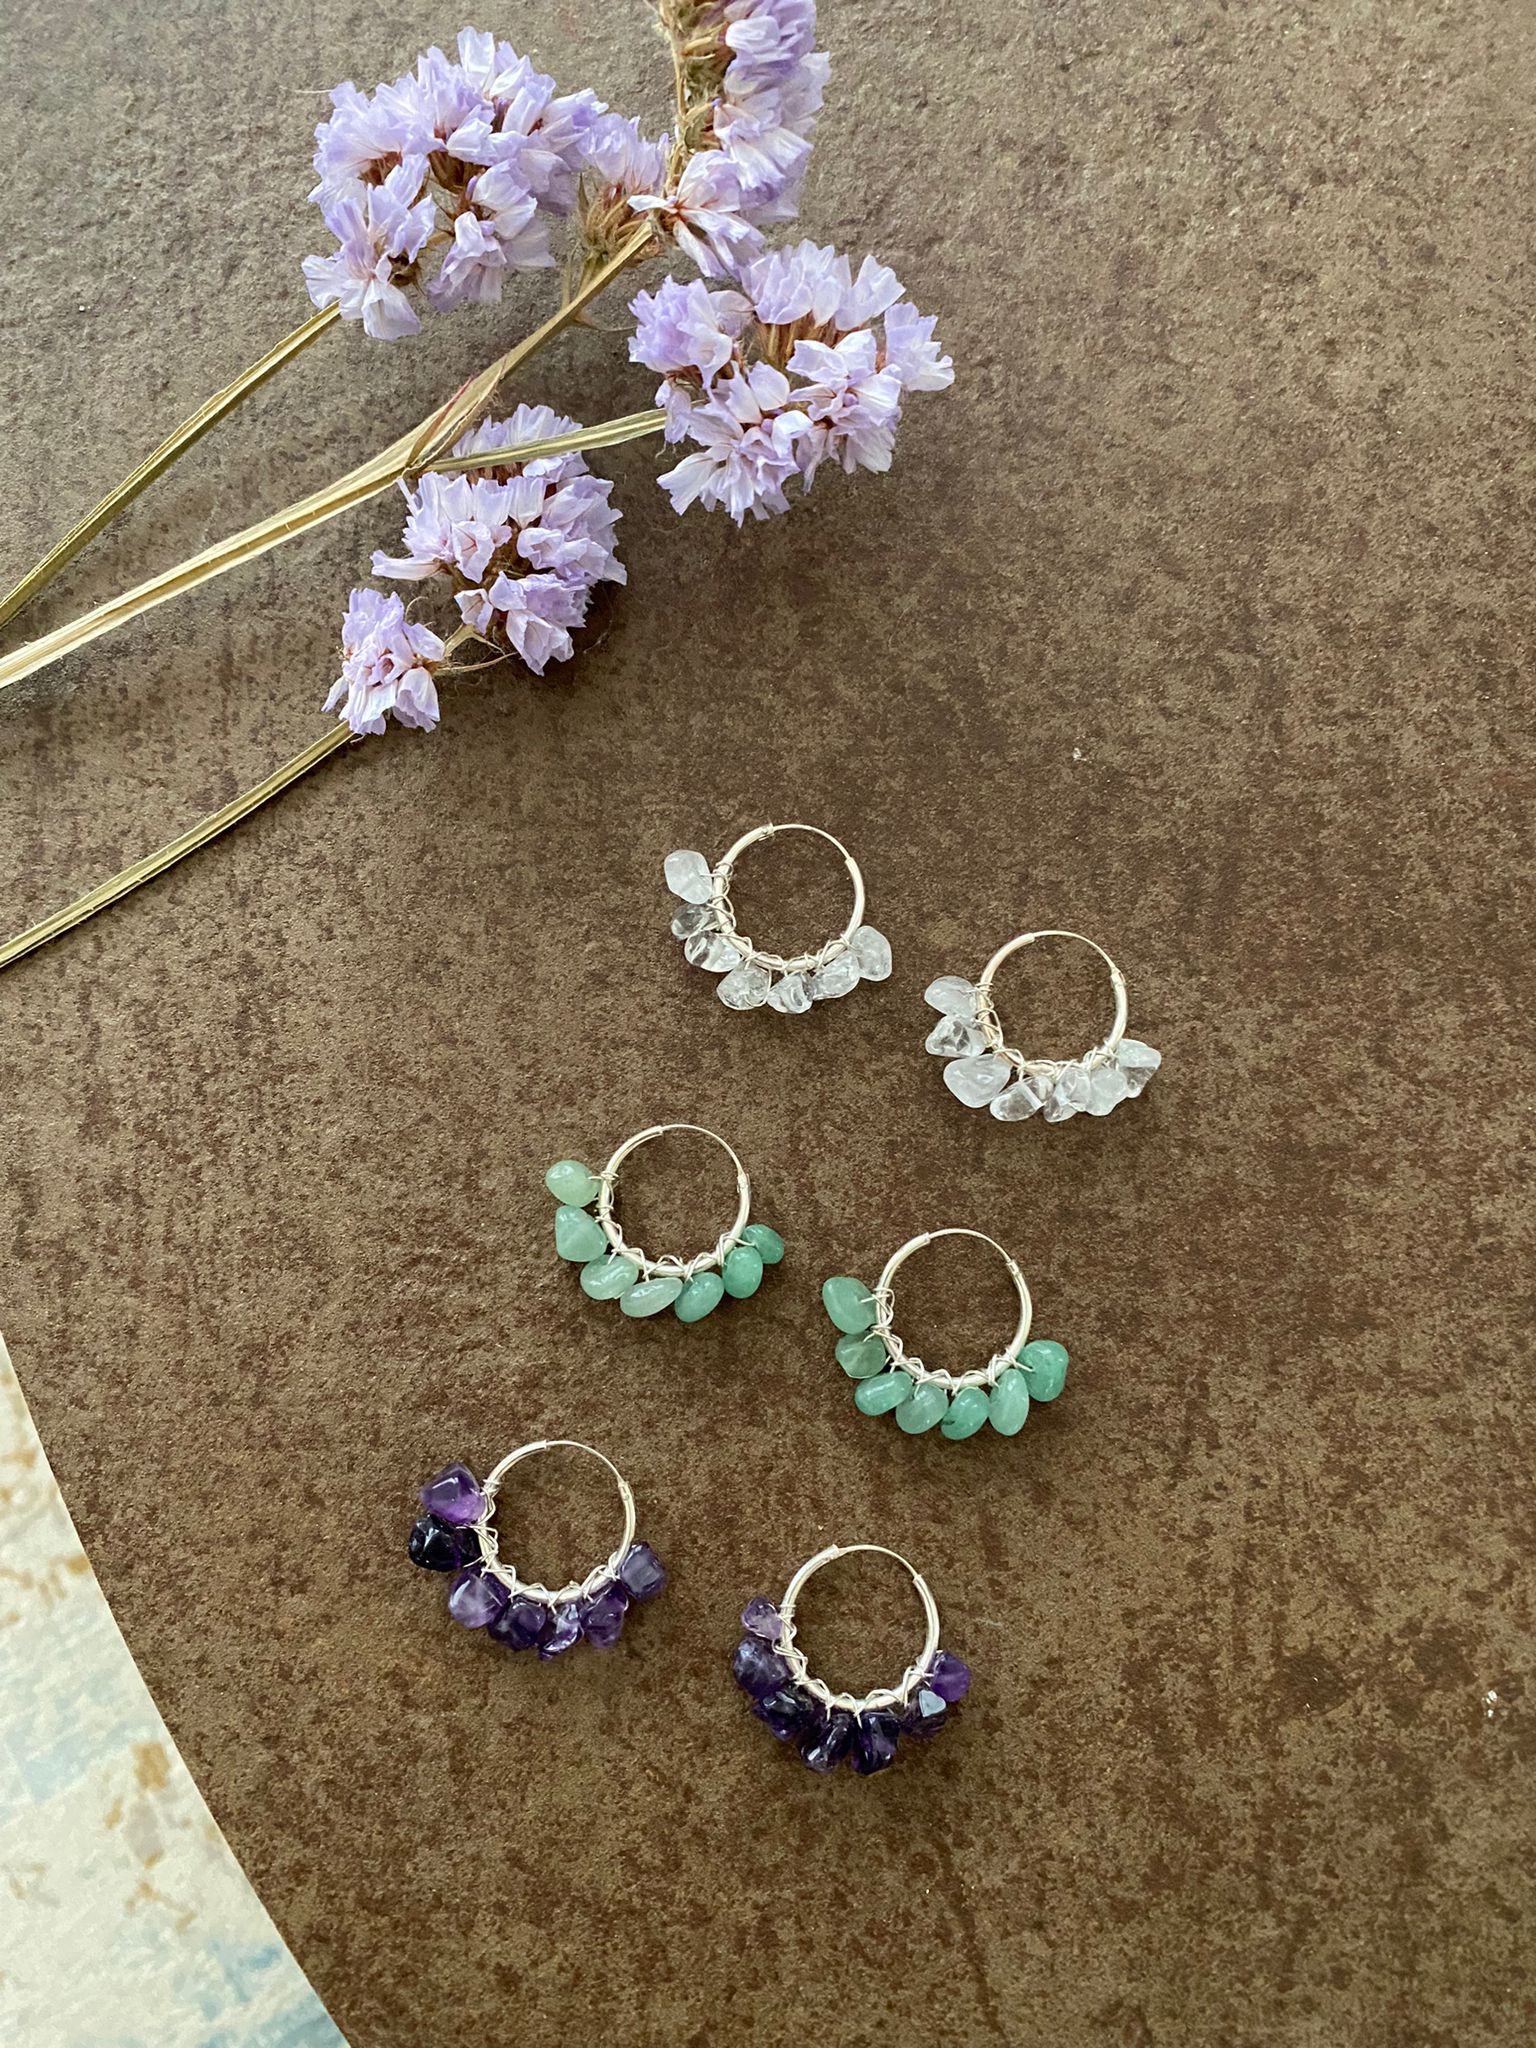 Gemstone earrings, amethyst, aventurine and rock crystal